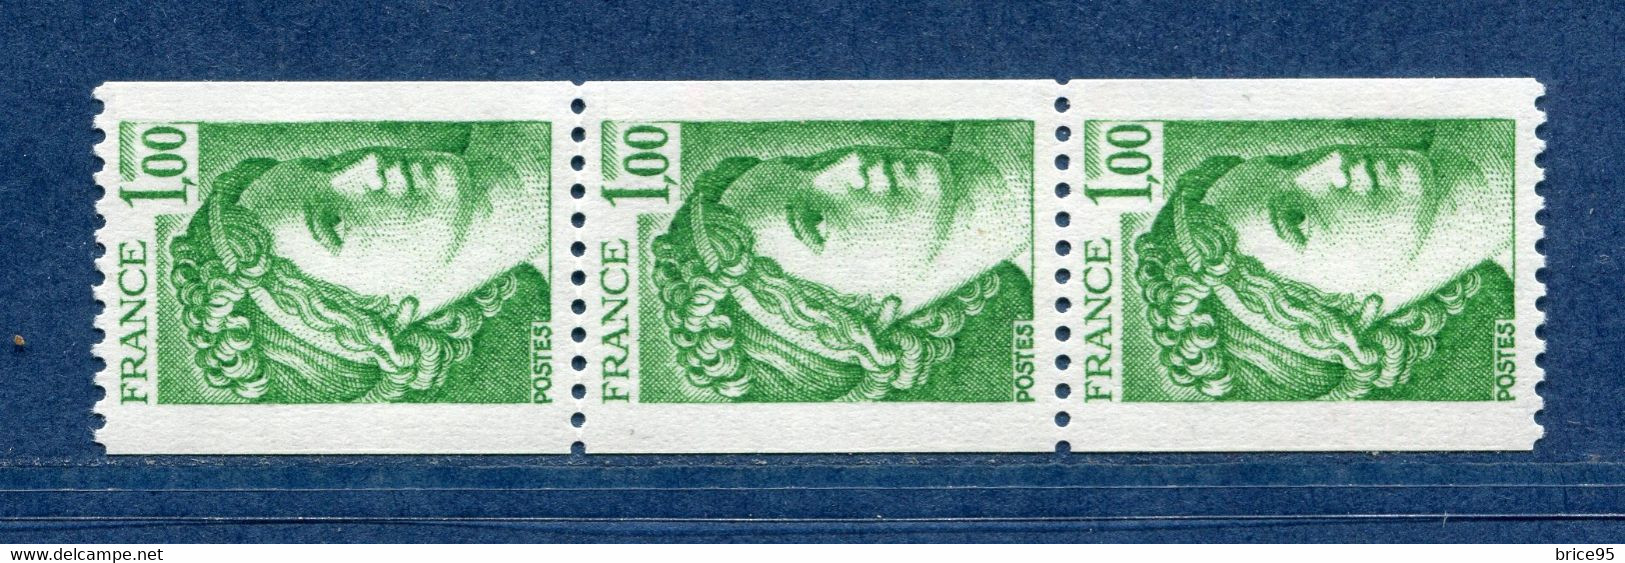 ⭐ France - Variété - YT N° 1981 A A - Numéro Rouge - Couleurs - Pétouilles - Neuf Sans Charnière - 1977 ⭐ - Unused Stamps